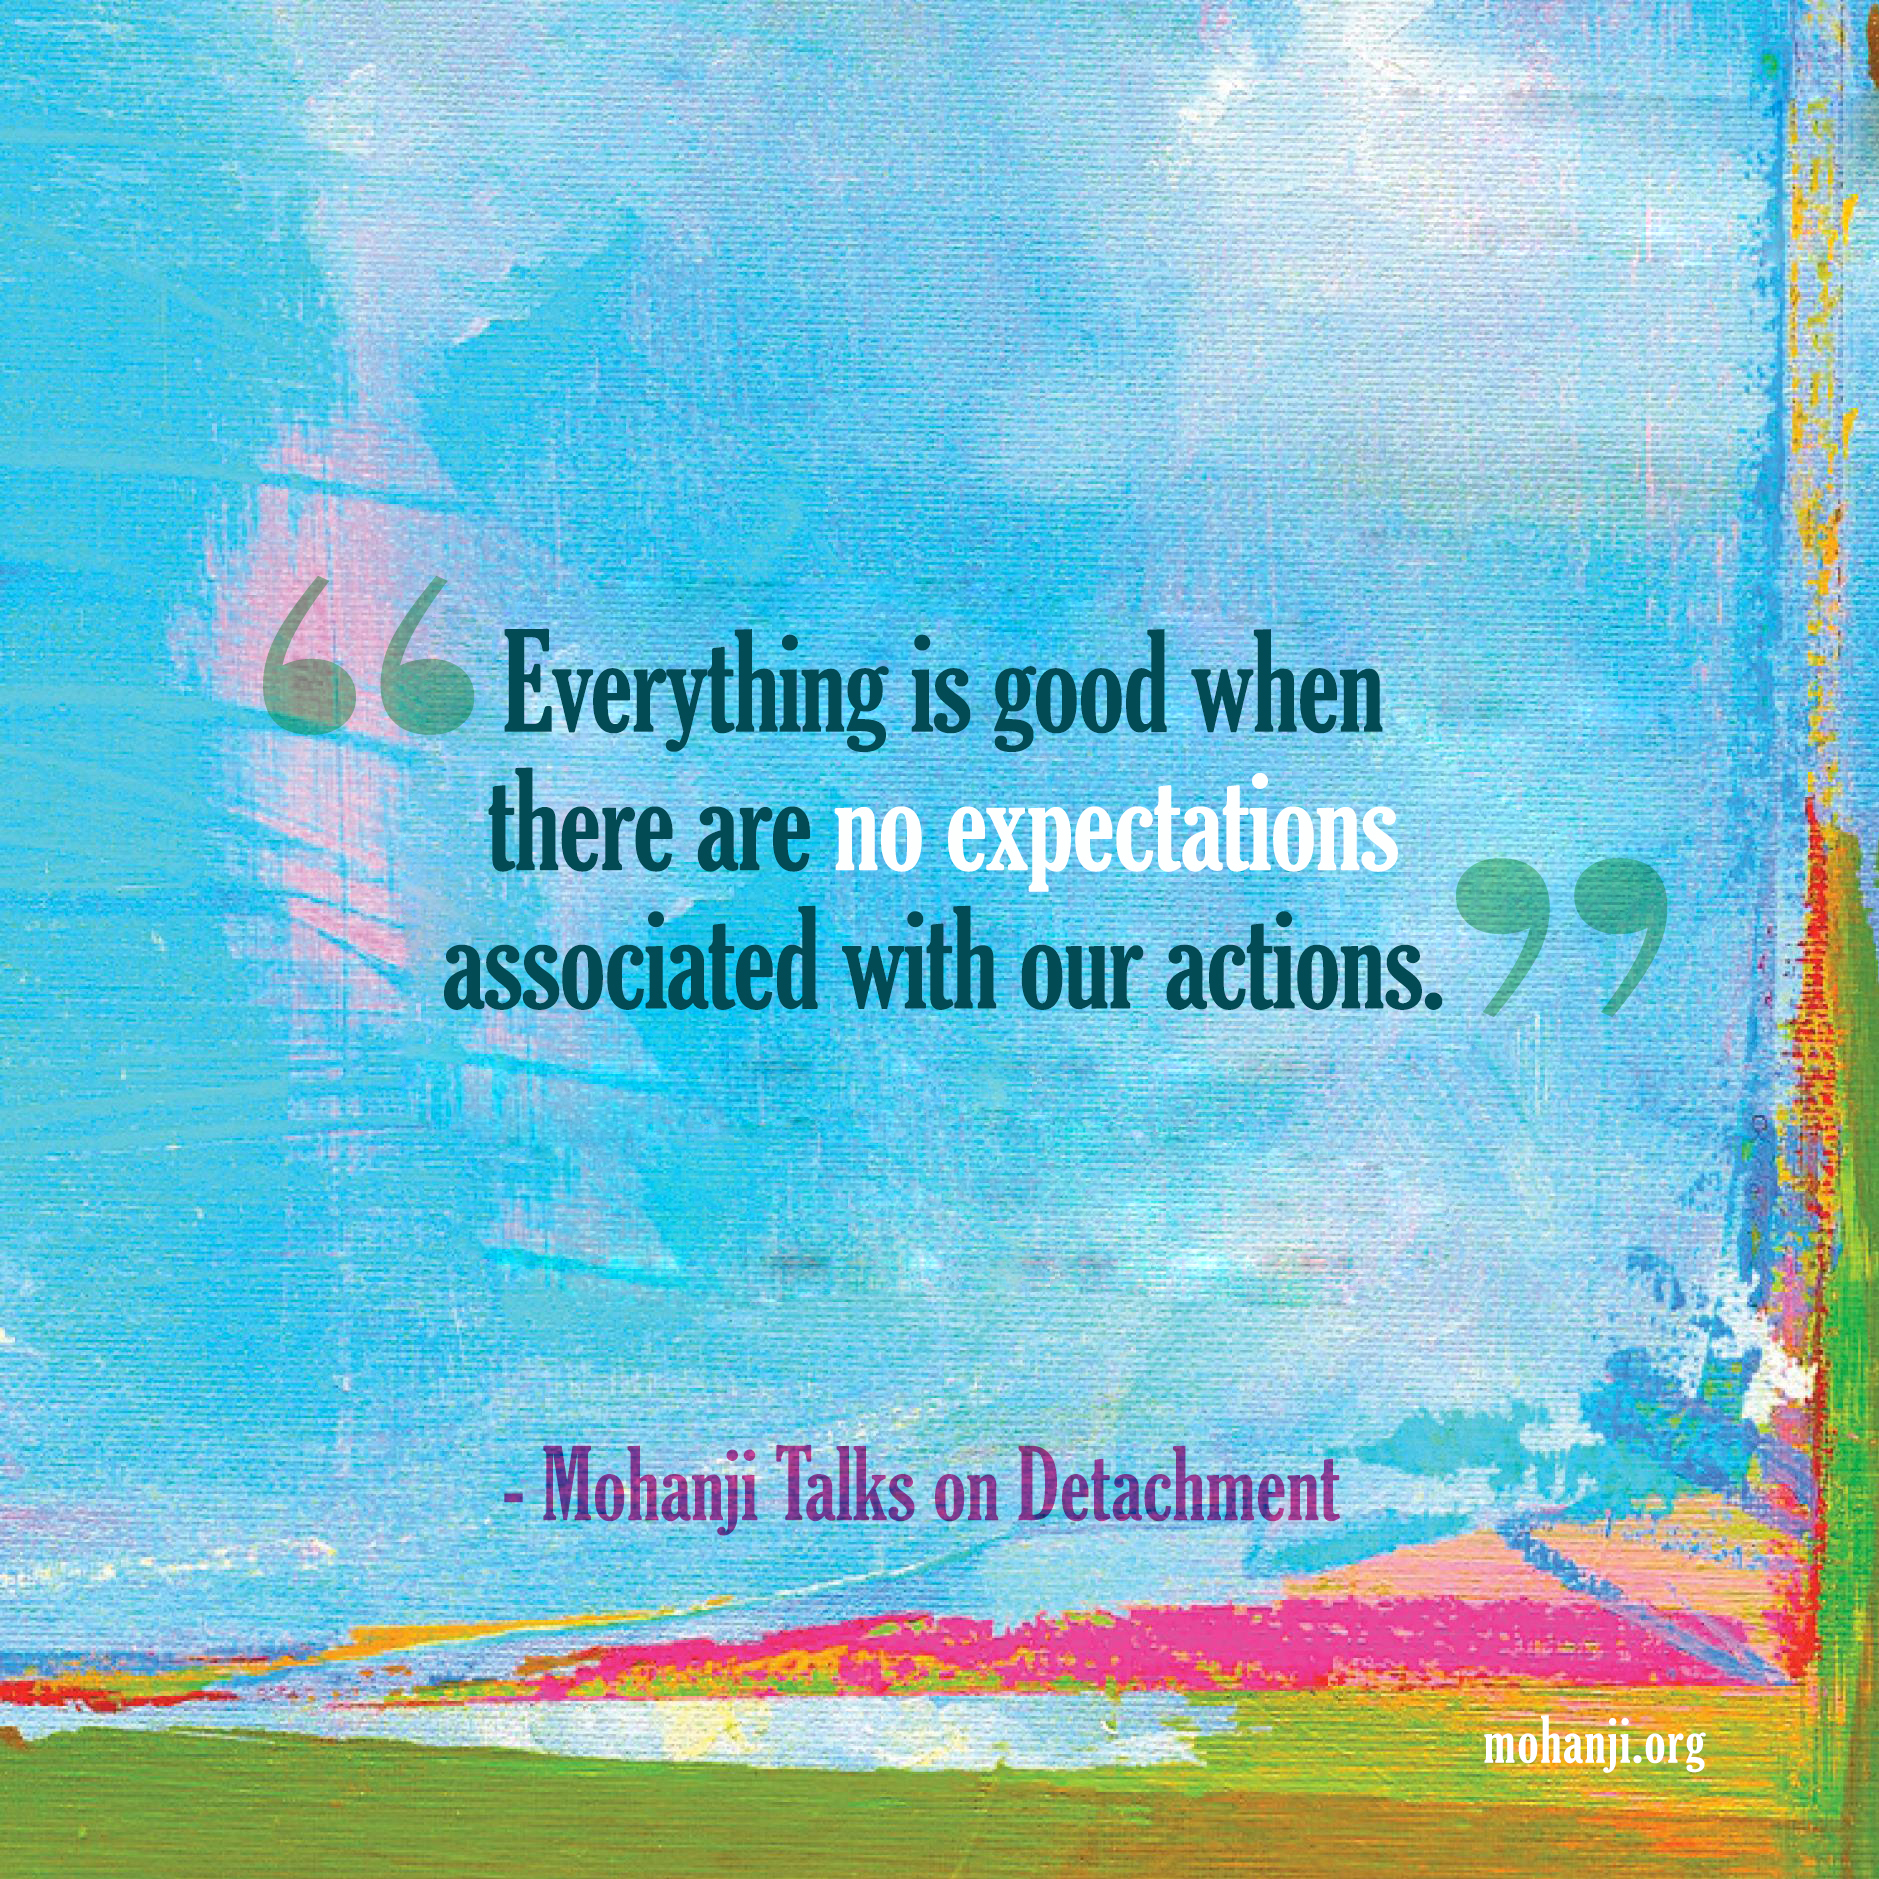 Mohanji quote - Detachment 1